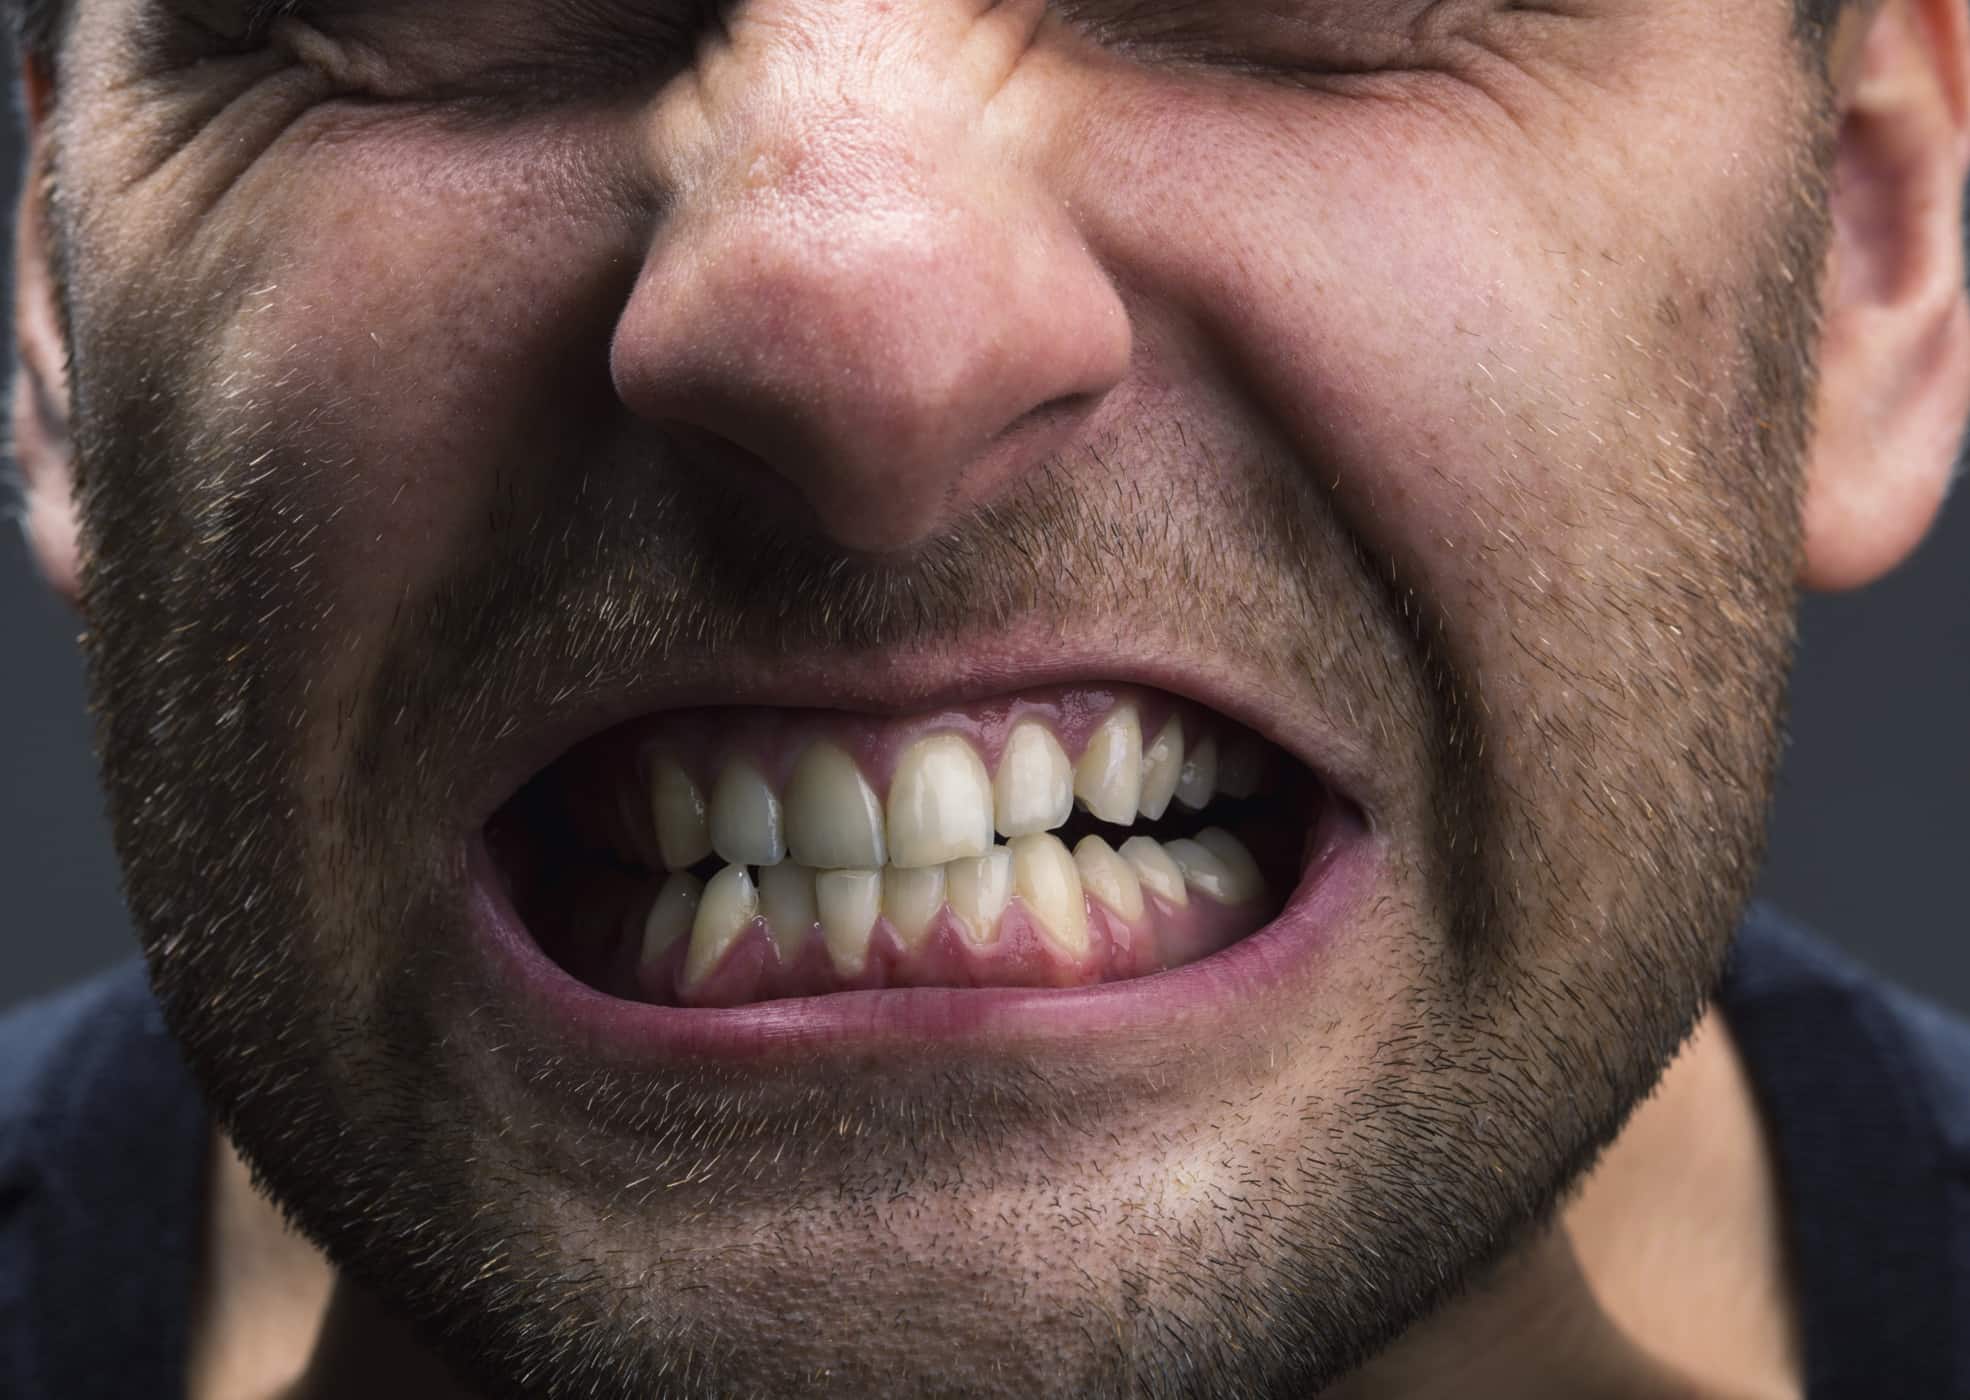 gangguan kesehatan mulut akibat stres - Masalah Gigi dan Mulut yang Mungkin Muncul Akibat Stres